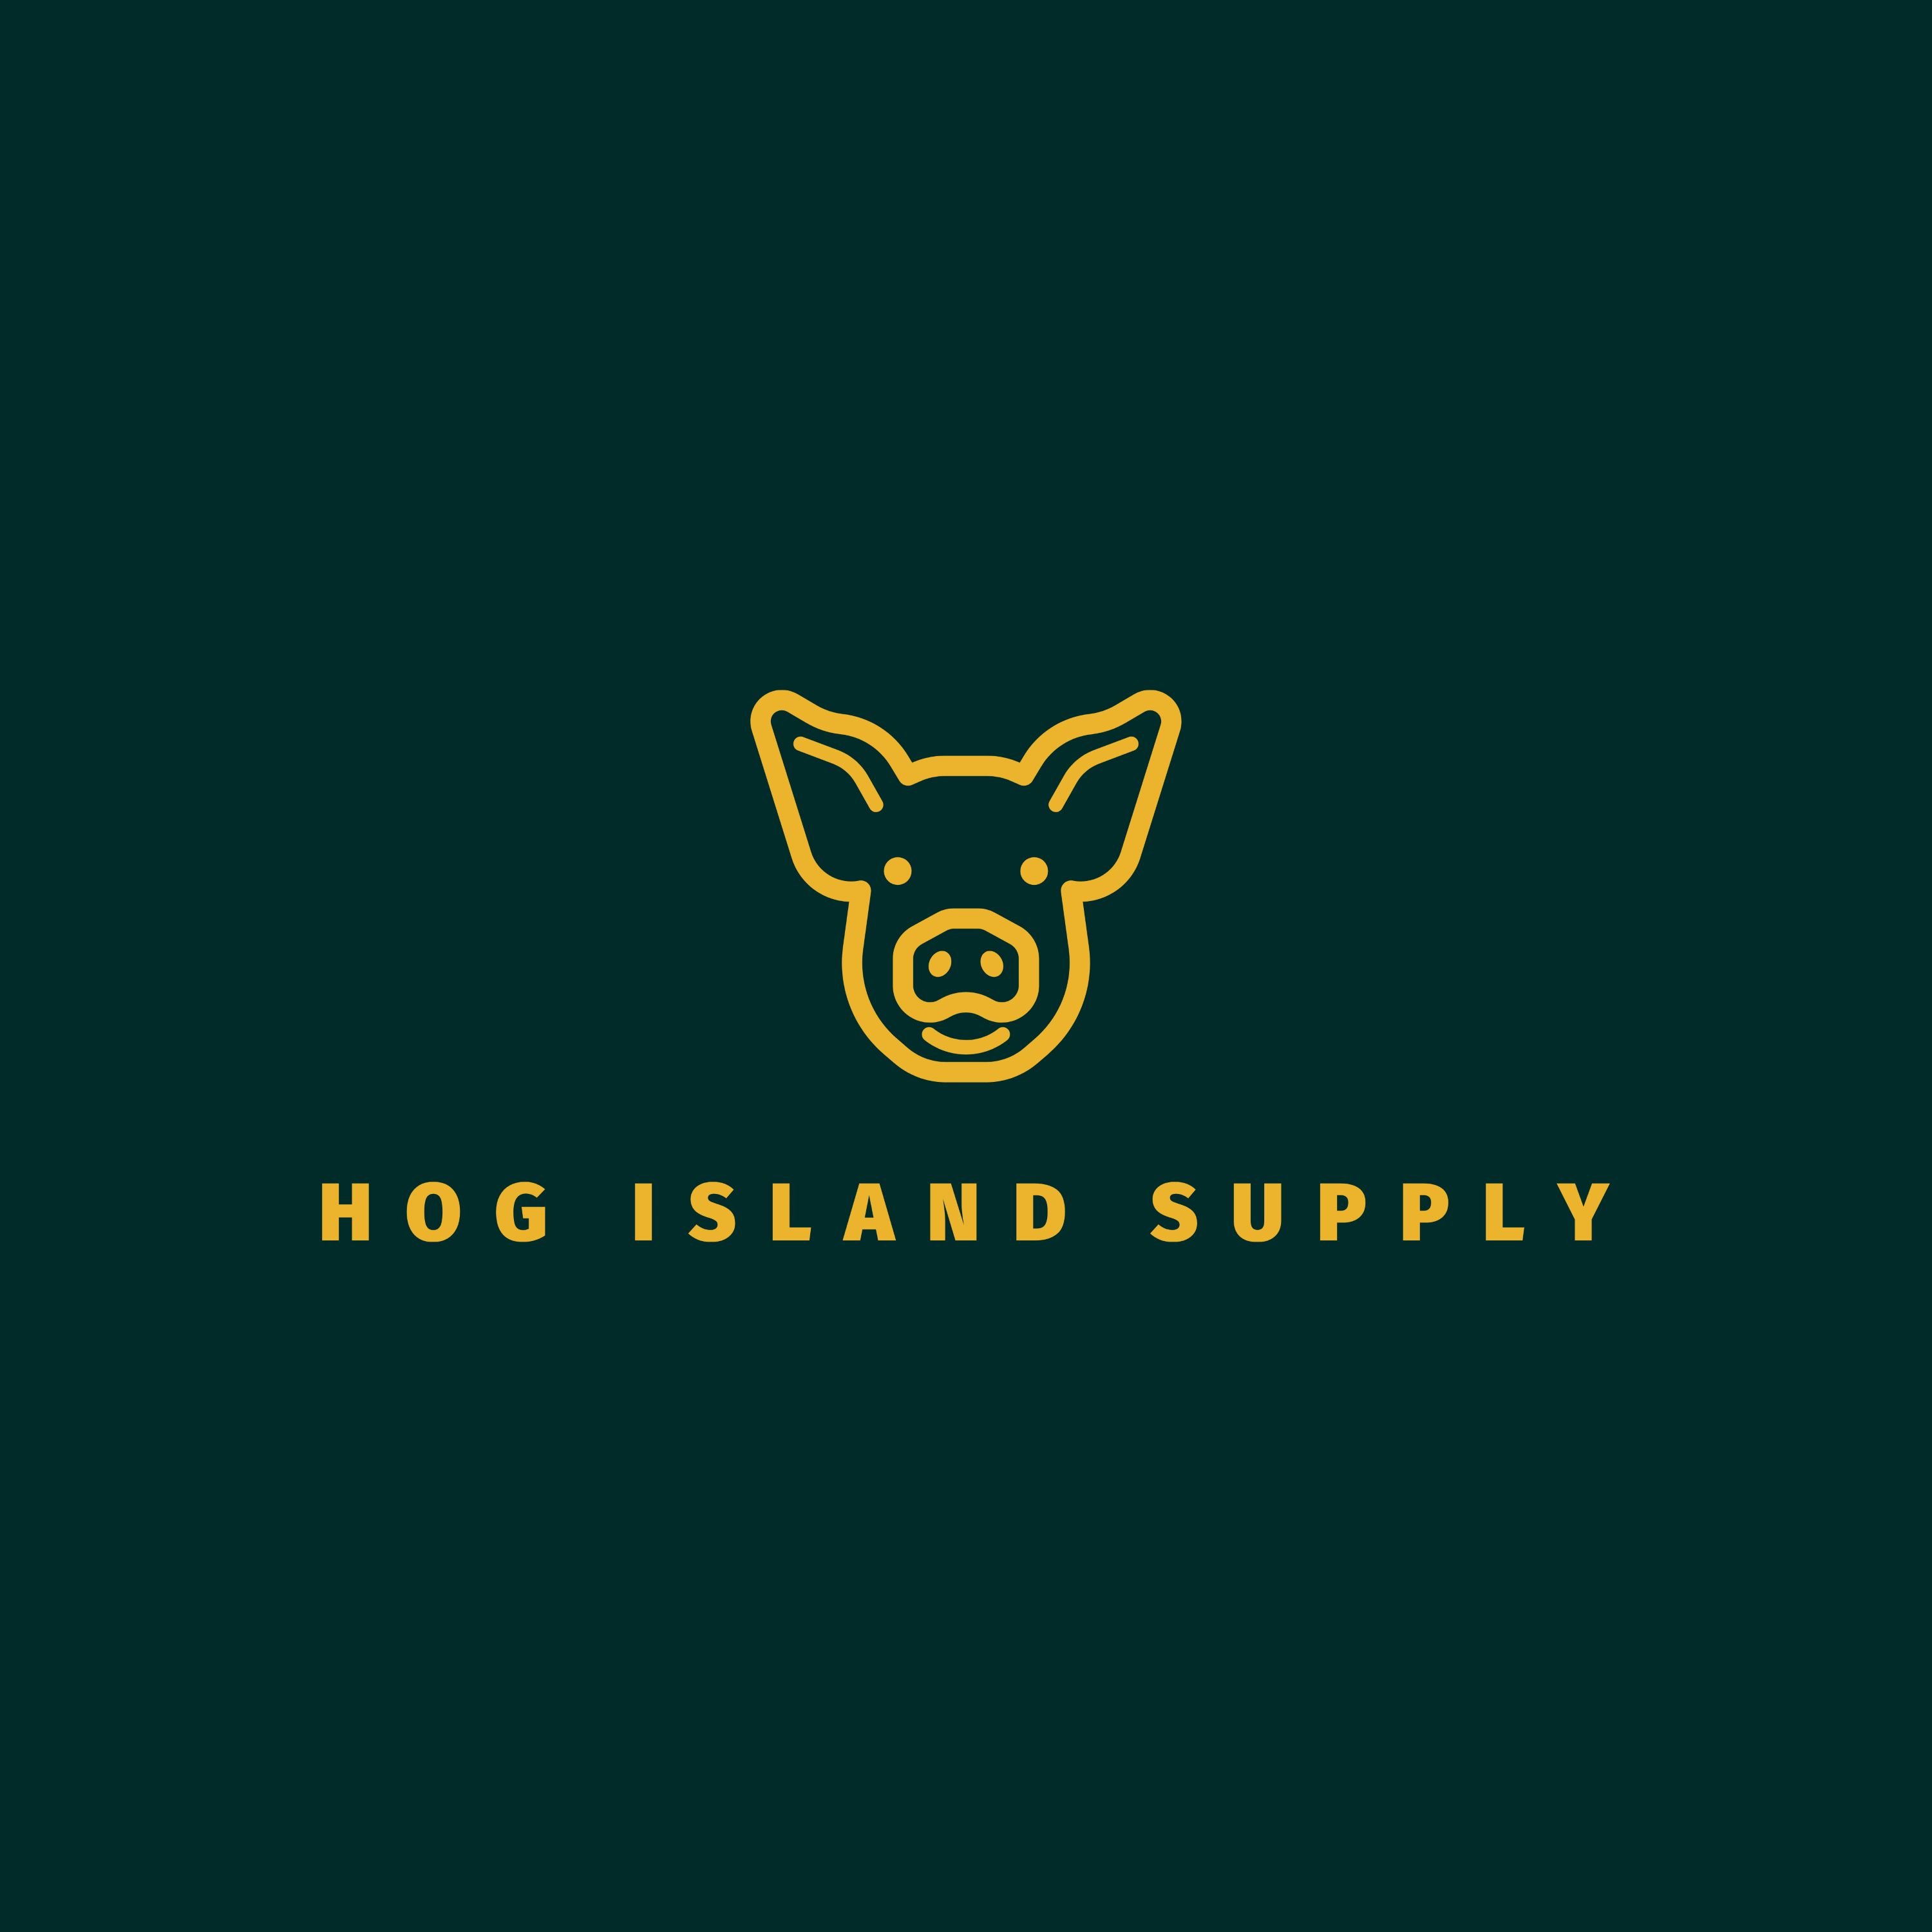 Hog Island Supply